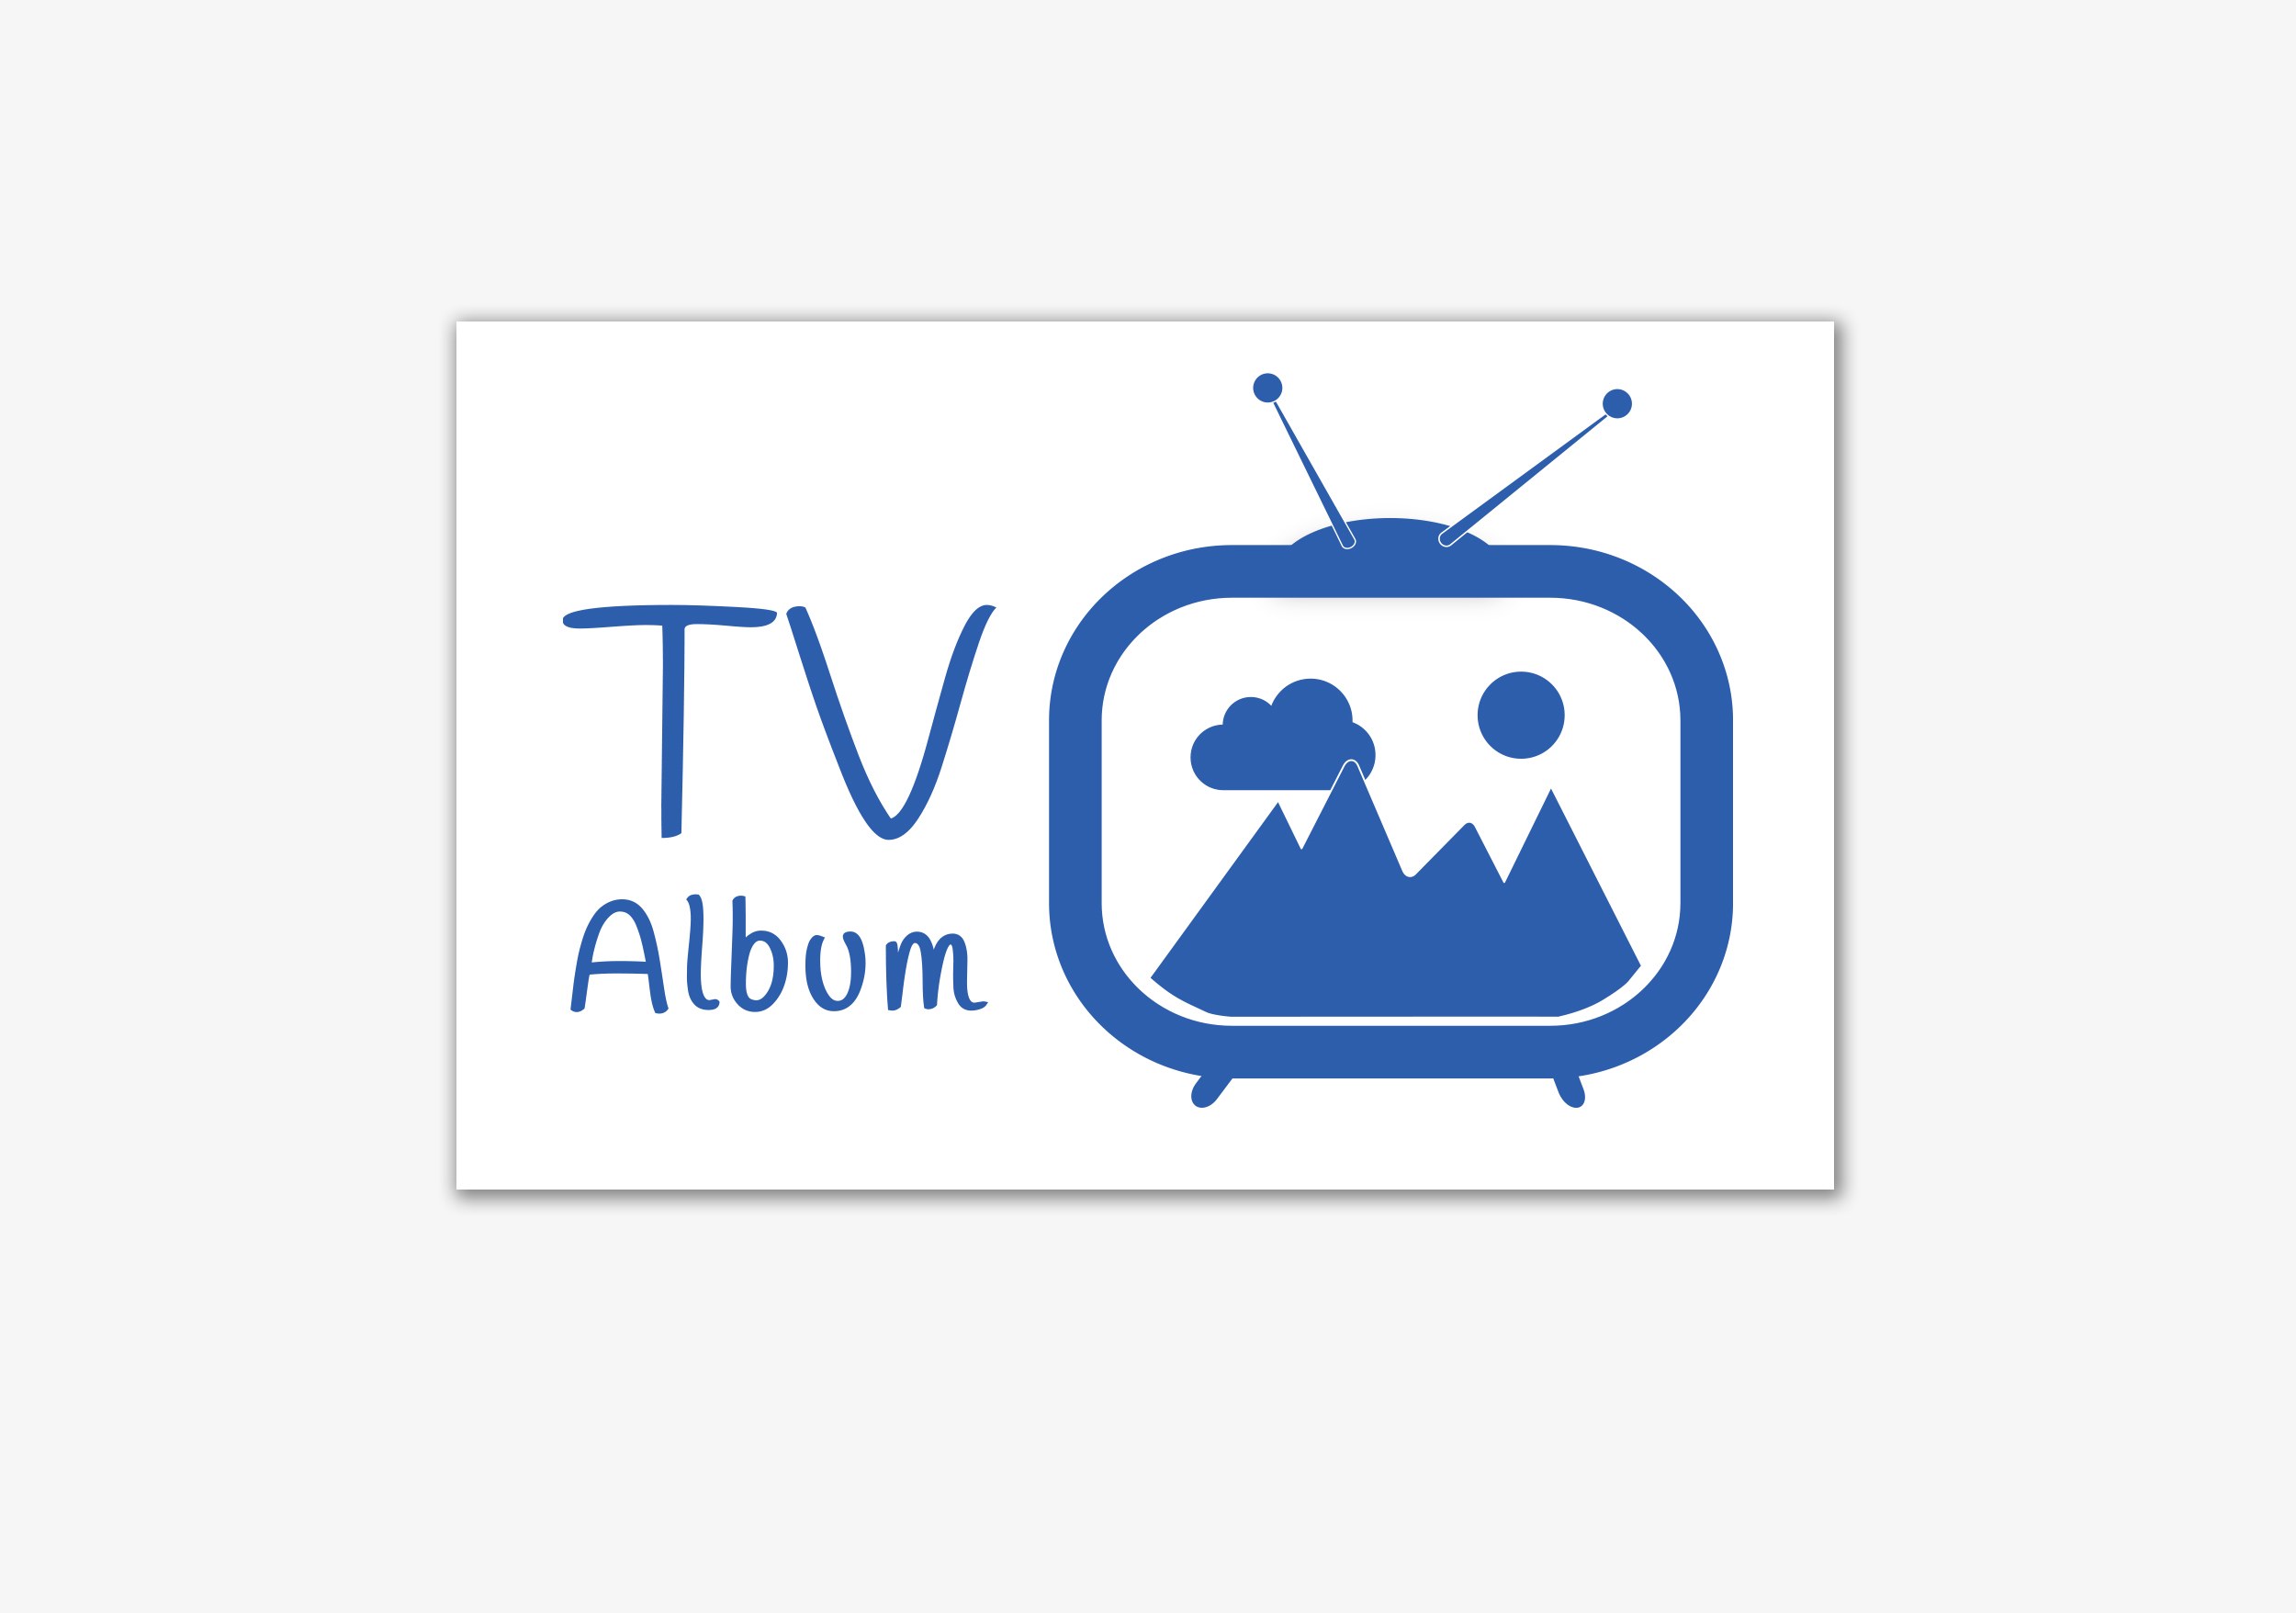 TV Album Logo